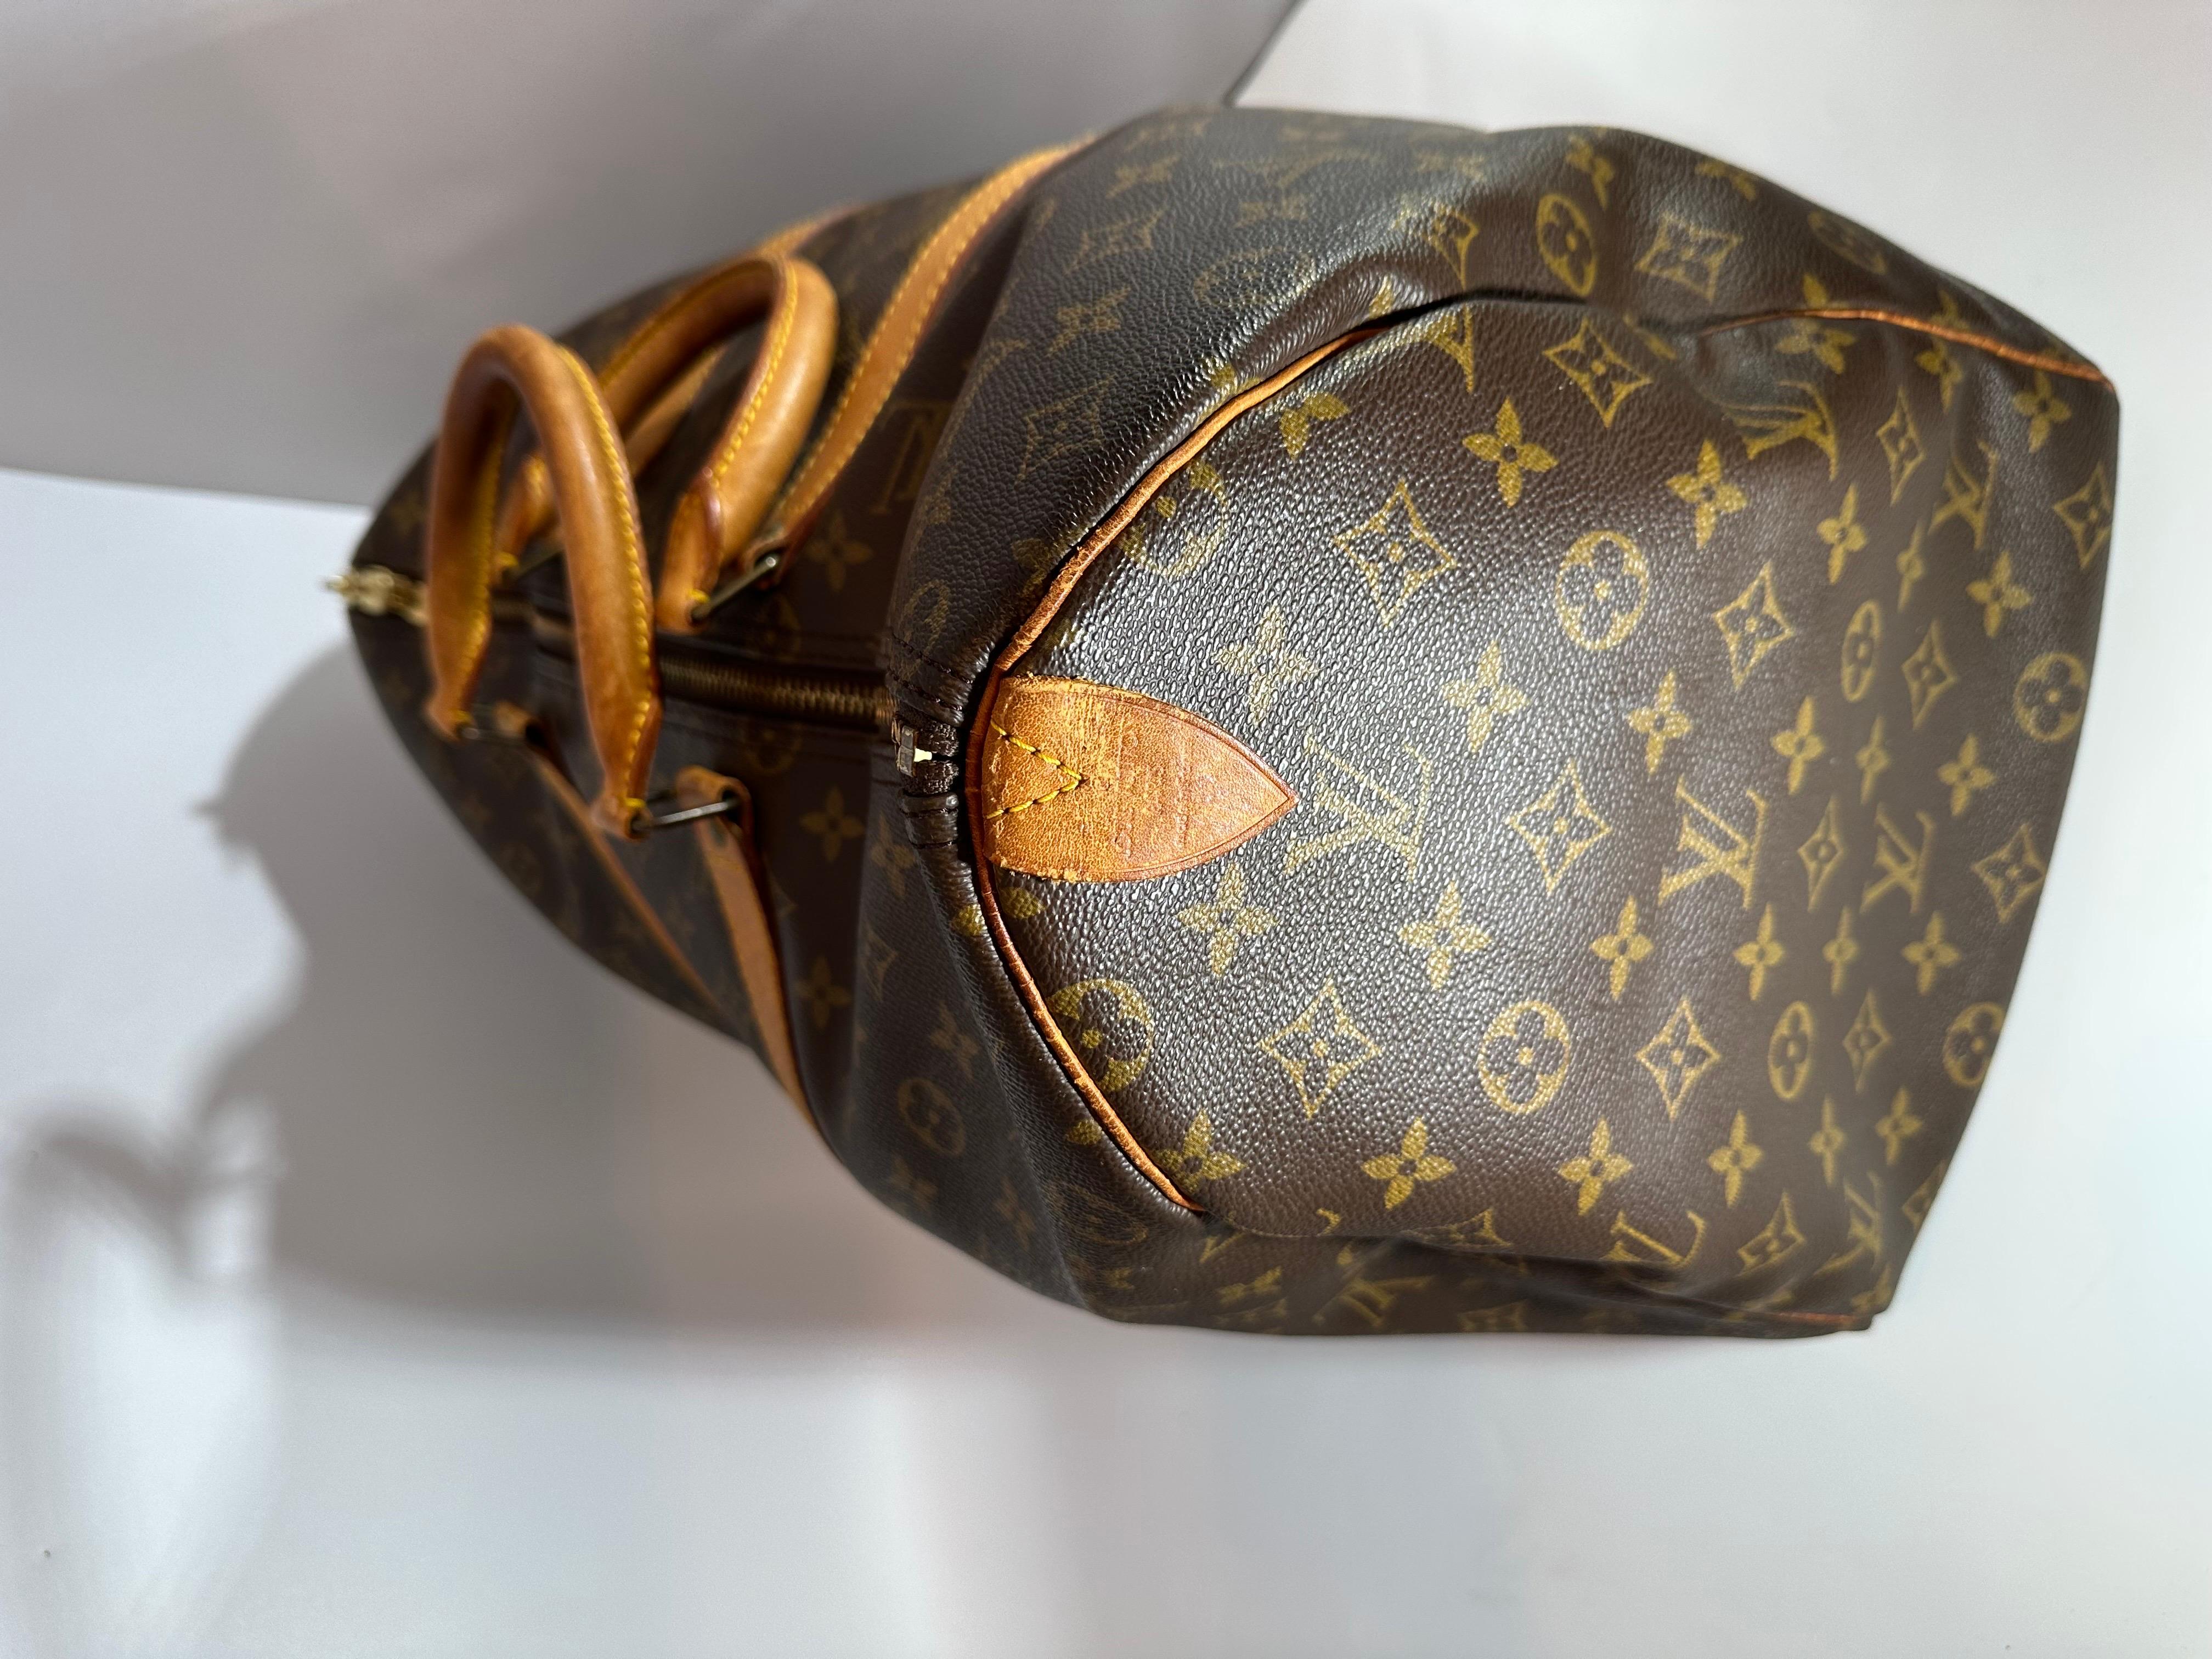 Le Keepall 50 de Louis Vuitton, imprimé du logo de la marque et garni de cuir, apporte une touche de luxe patrimonial où que vous le portiez.
Sur l'ensemble  bon état,
J'ai ajouté beaucoup de photos du sac original donc s'il vous plaît prendre un